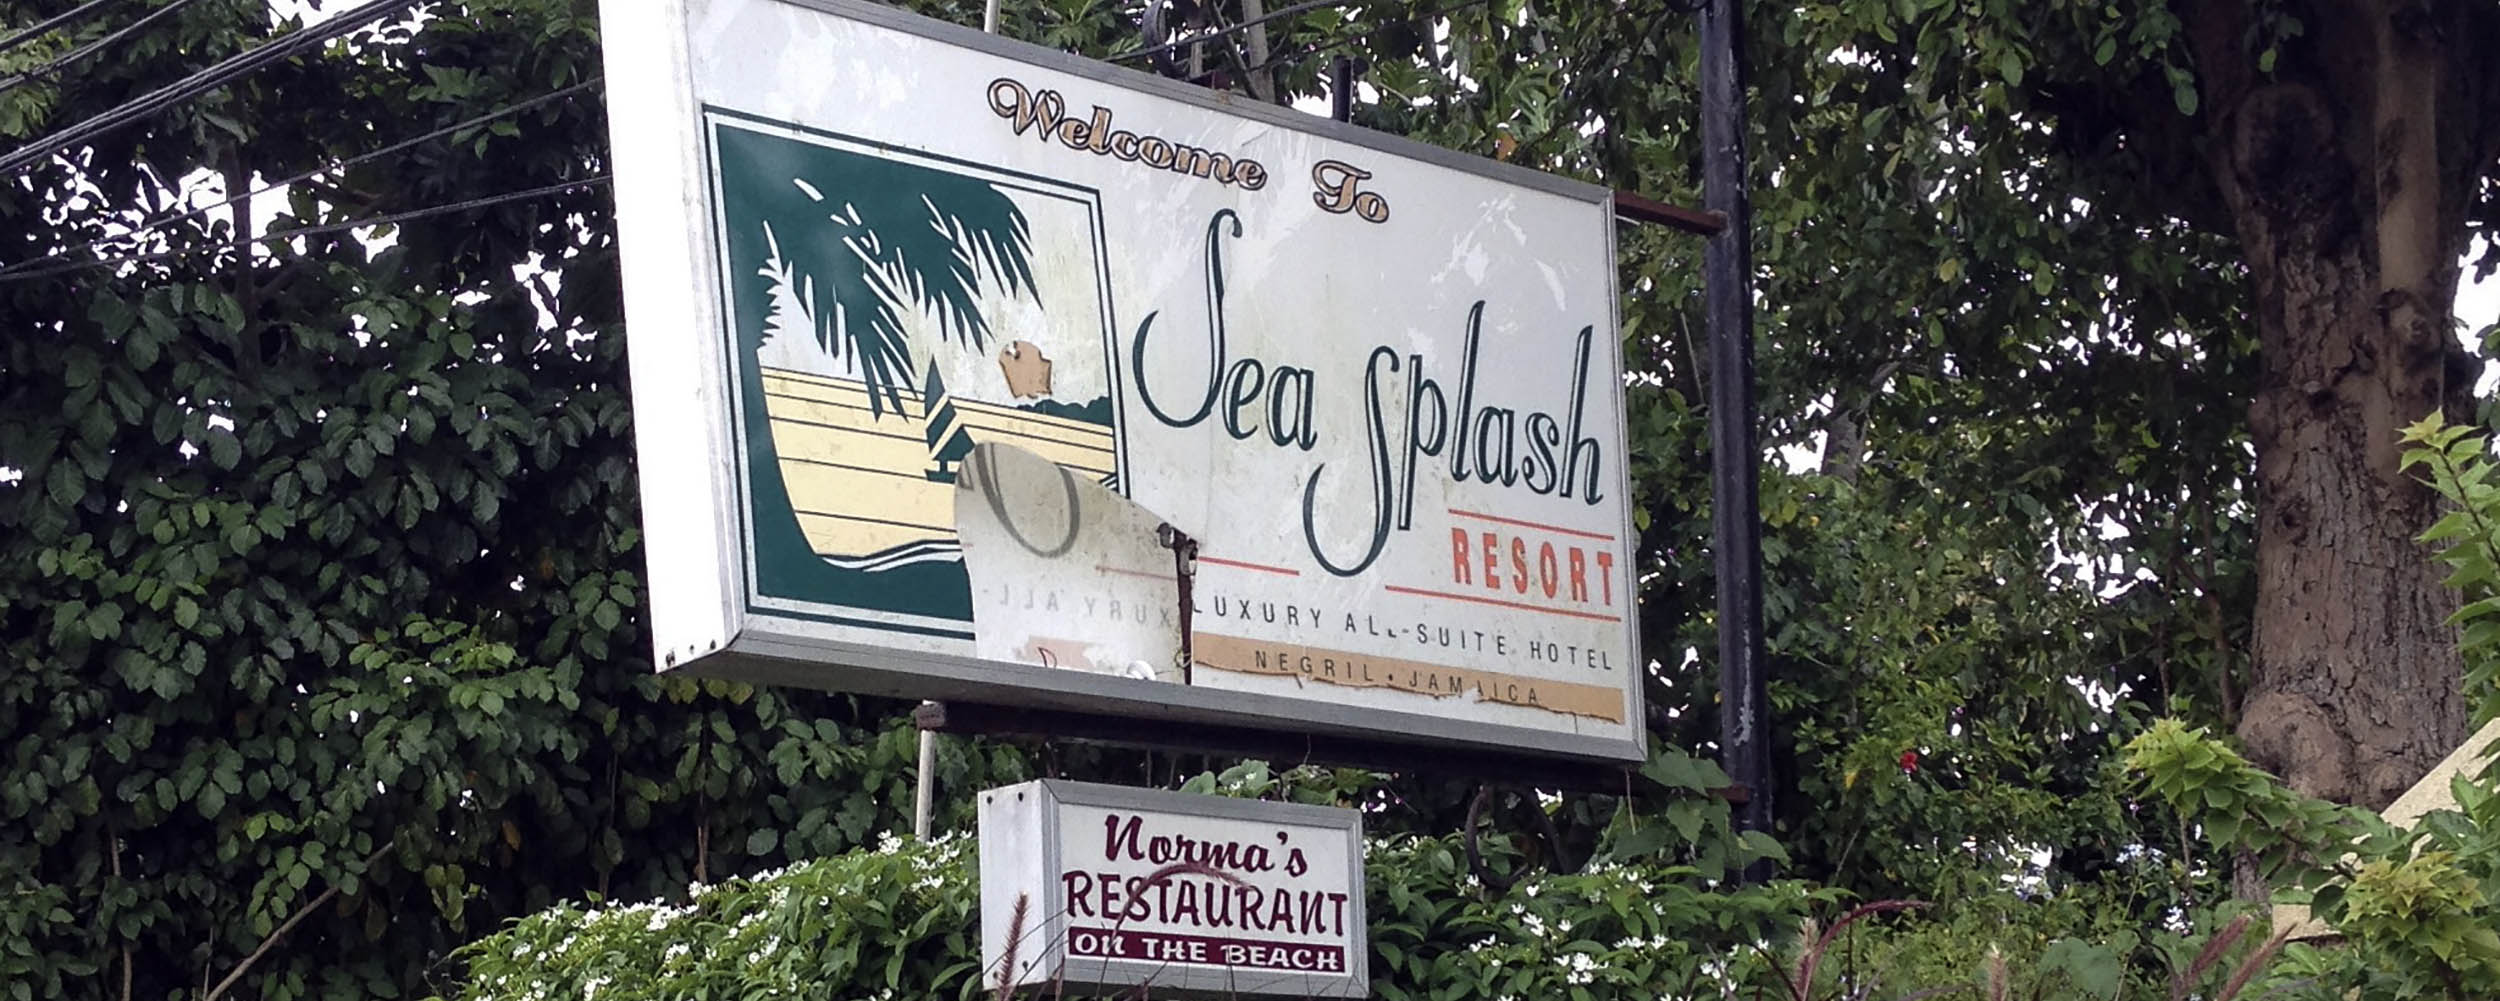 Sea Splash - Negril Jamaica